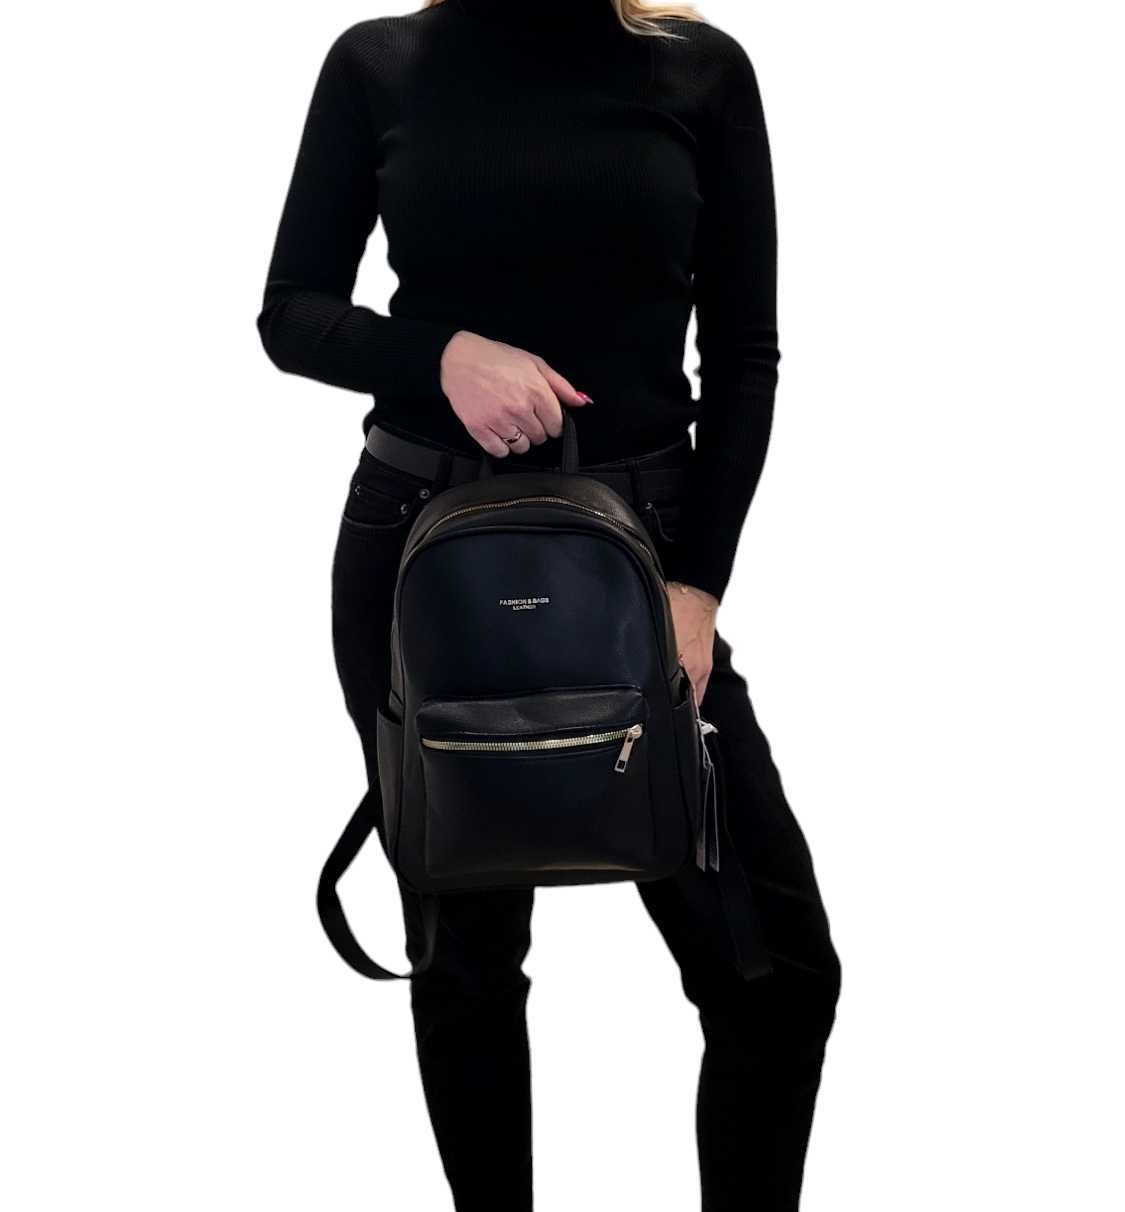 Damski Plecak Torebka Fashion&Bags Leather-kieszeń - Czarny ekoskóra